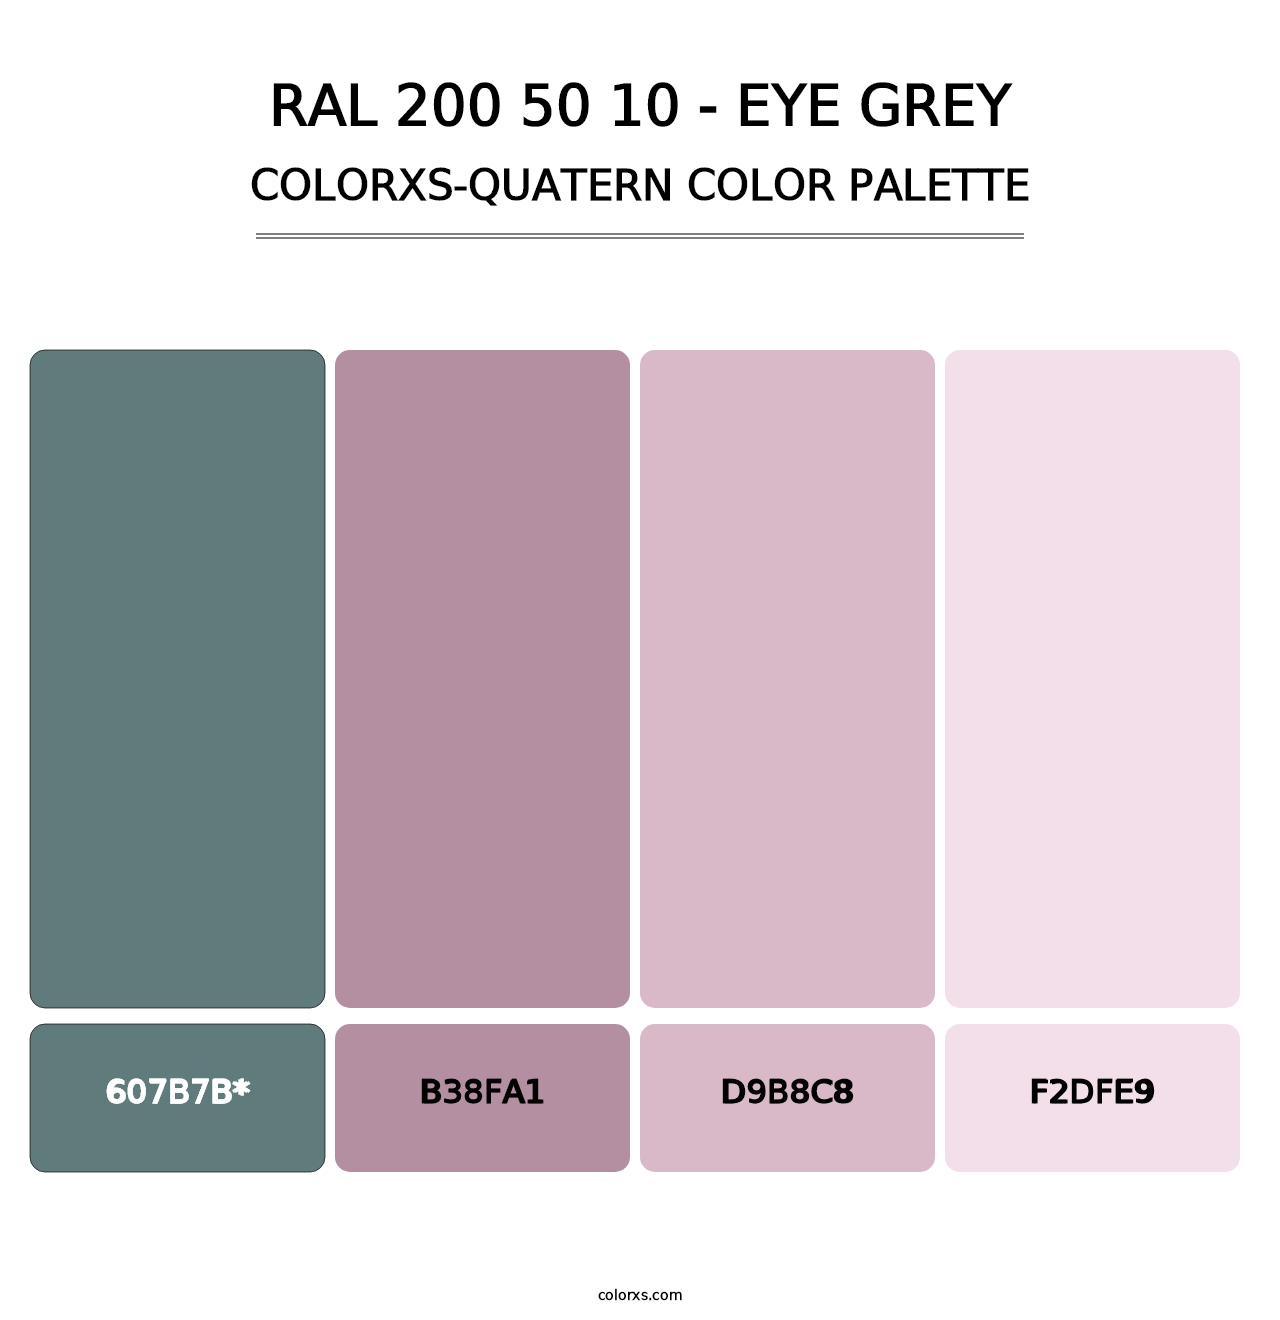 RAL 200 50 10 - Eye Grey - Colorxs Quatern Palette